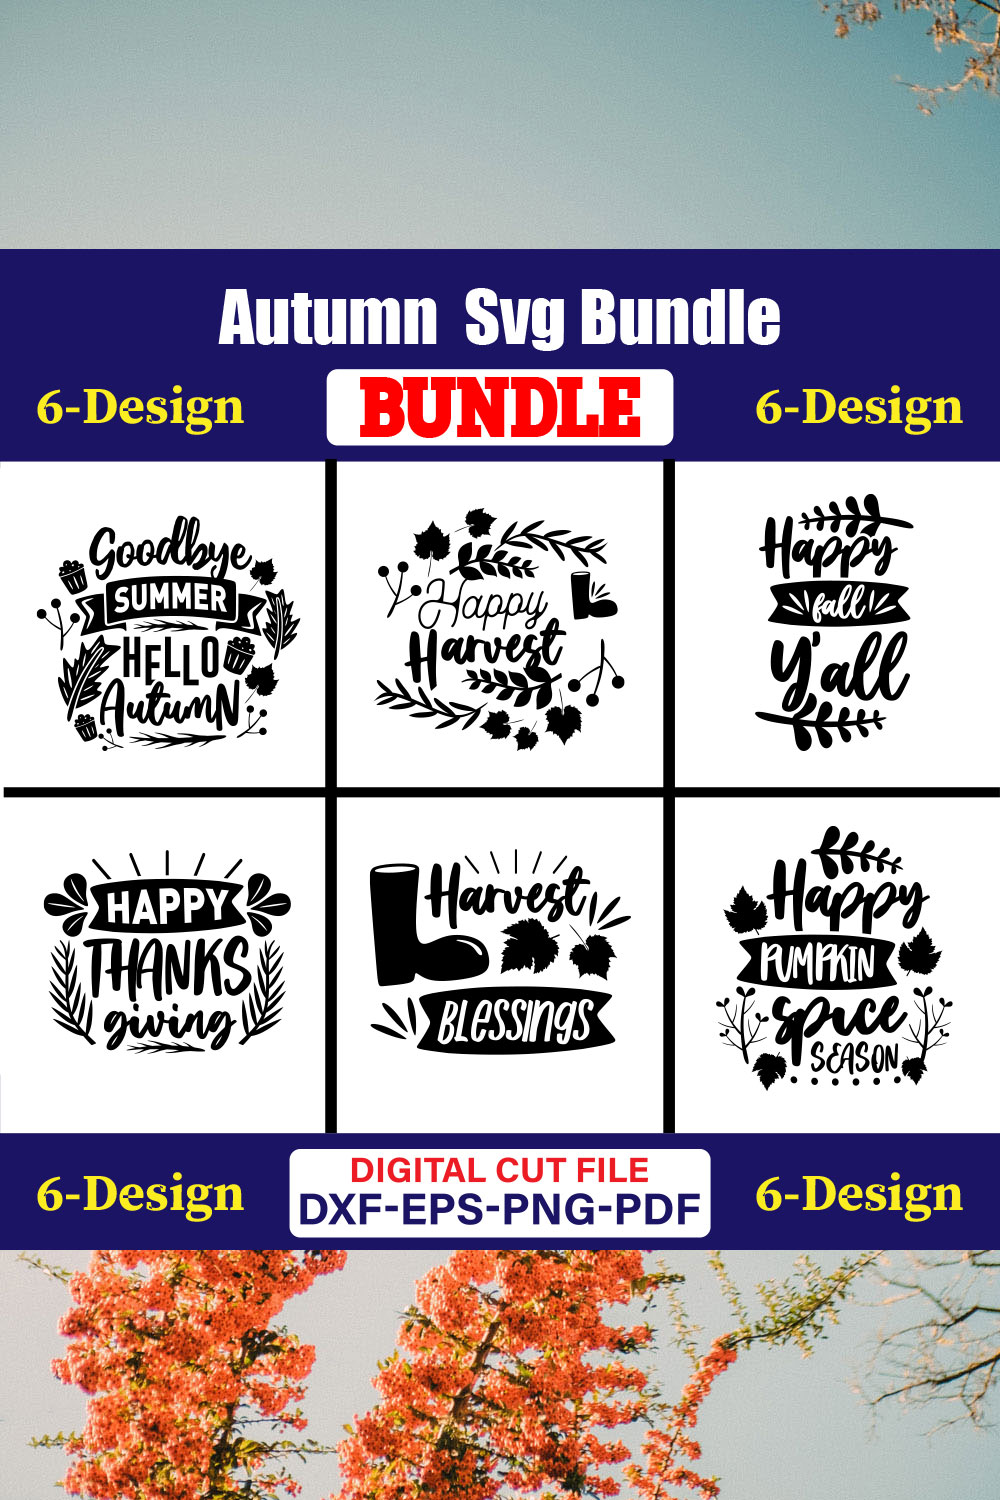 Autumn SVG T-shirt Design Bundle Vol-03 pinterest preview image.